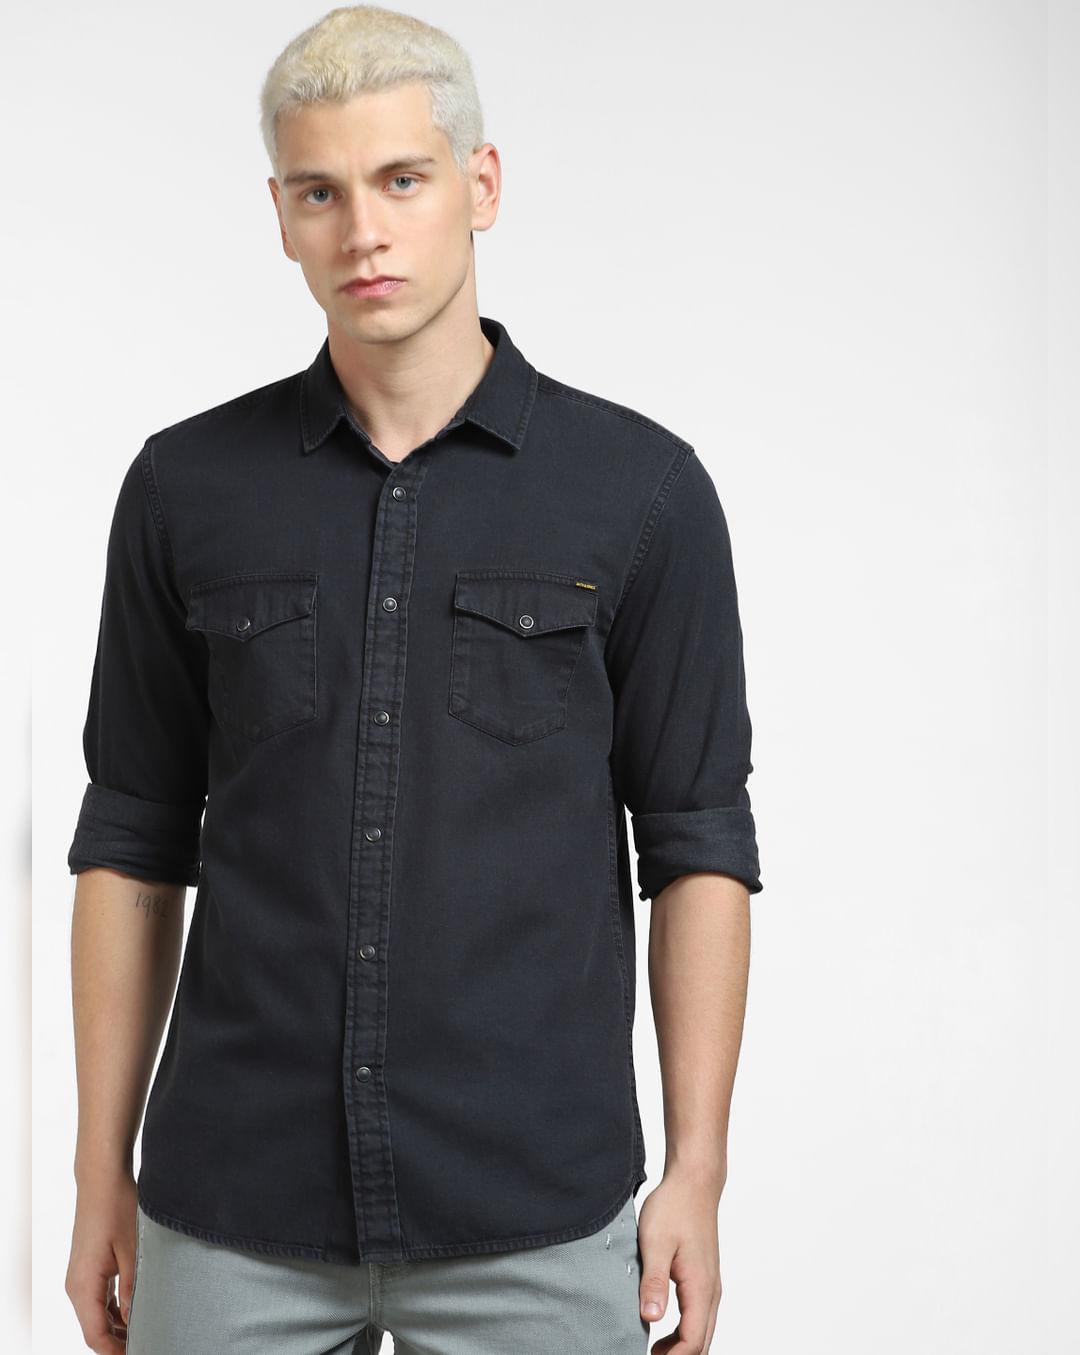 black-denim-full-sleeves-shirt